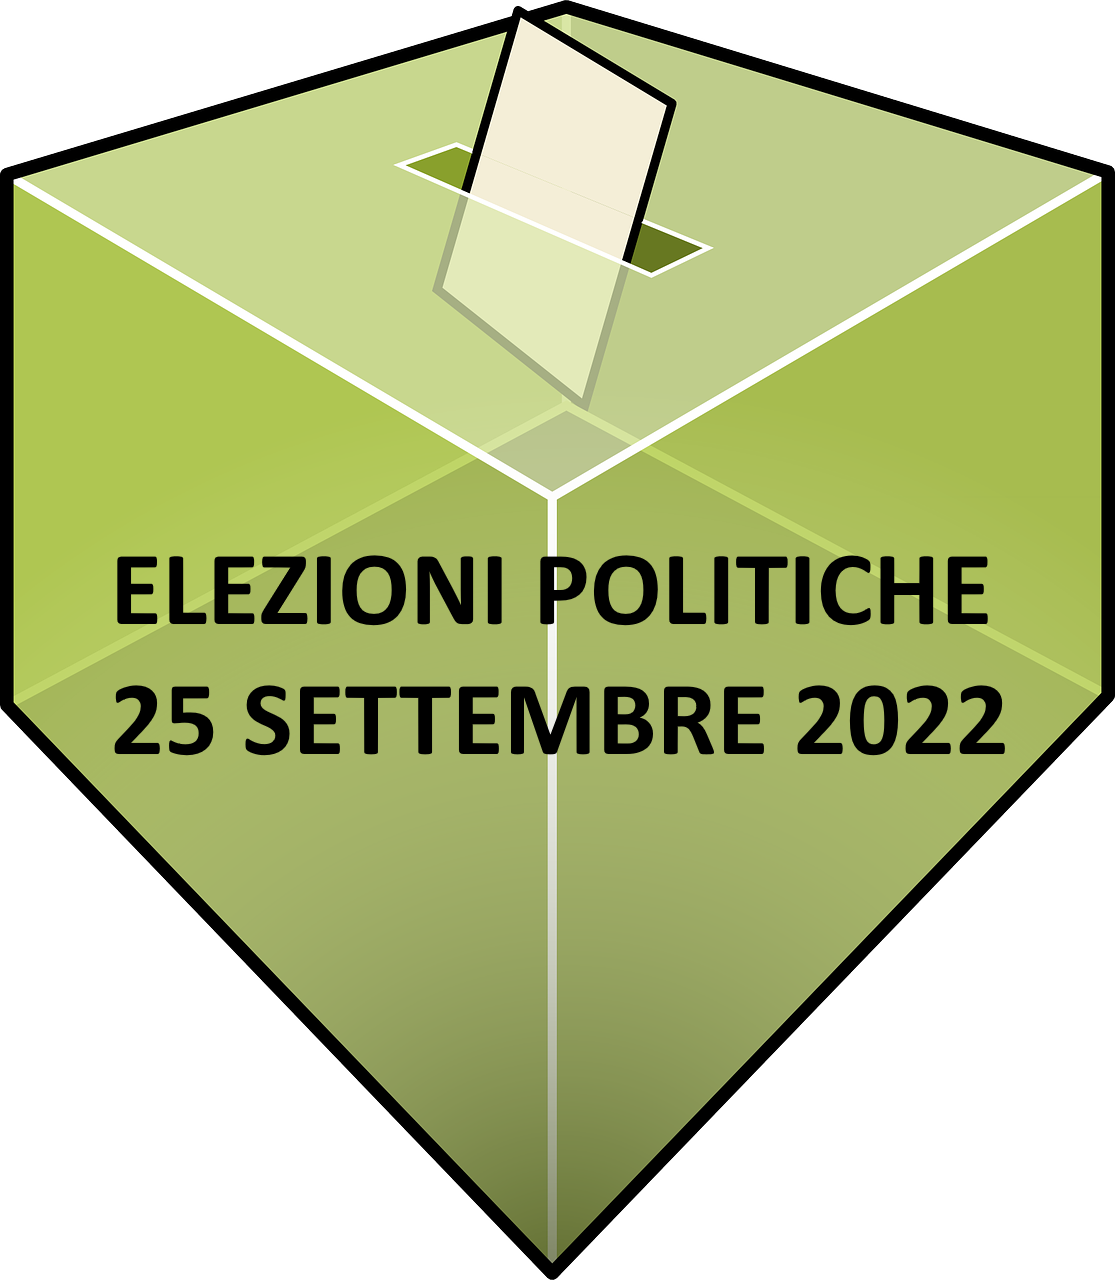 Elezioni politiche 2022- Servizio trasporto disabili ai seggi elettorali